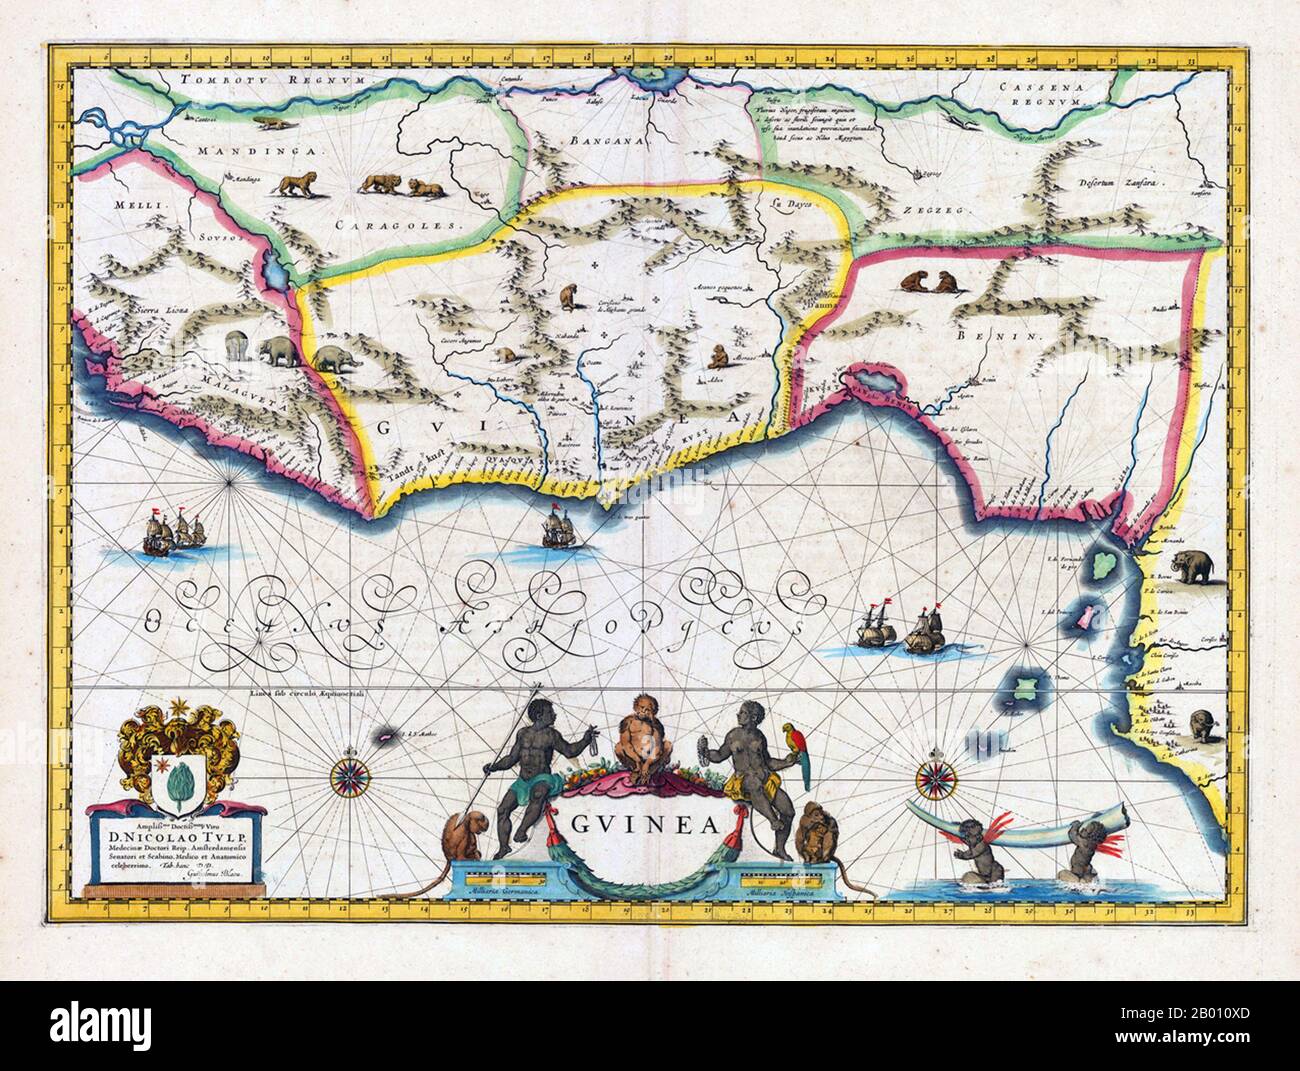 África: Mapa de Guinea y sus alrededores. El Reino de Benin está indicado en el este. Mapa de Willem Blaeu (1571-1638) y Joan Bleau (1596-1673), Ámsterdam, 1640-1650. Foto de stock